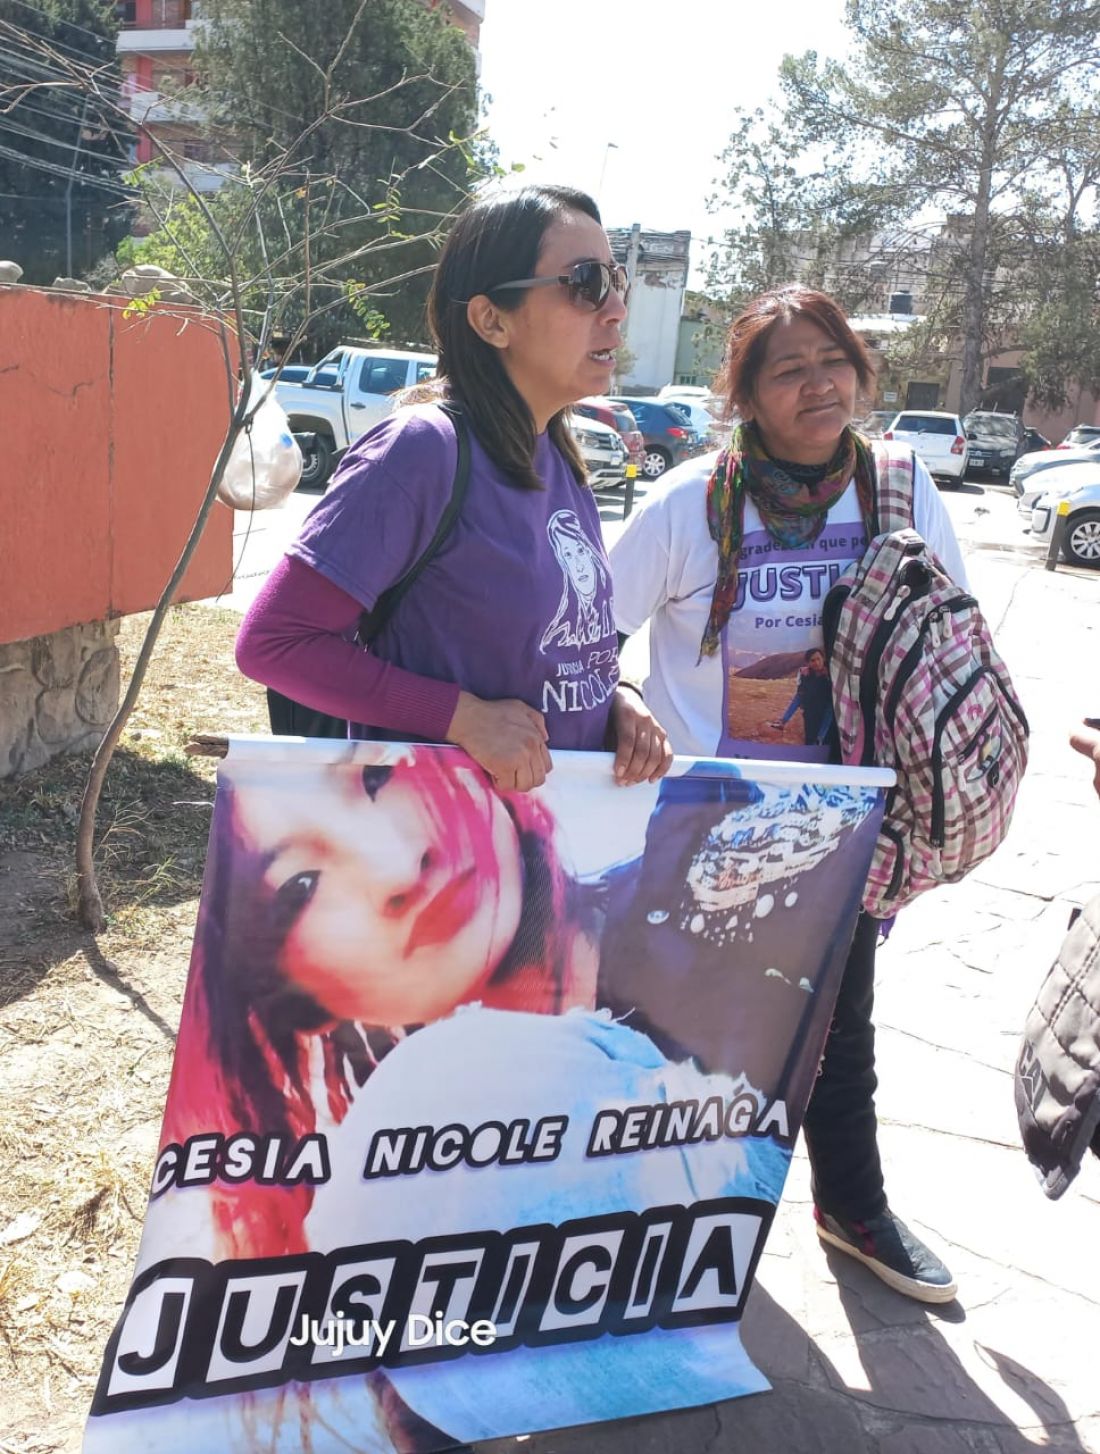 Libertad condicional para los encubridores del femicidio de Cesia Reinaga